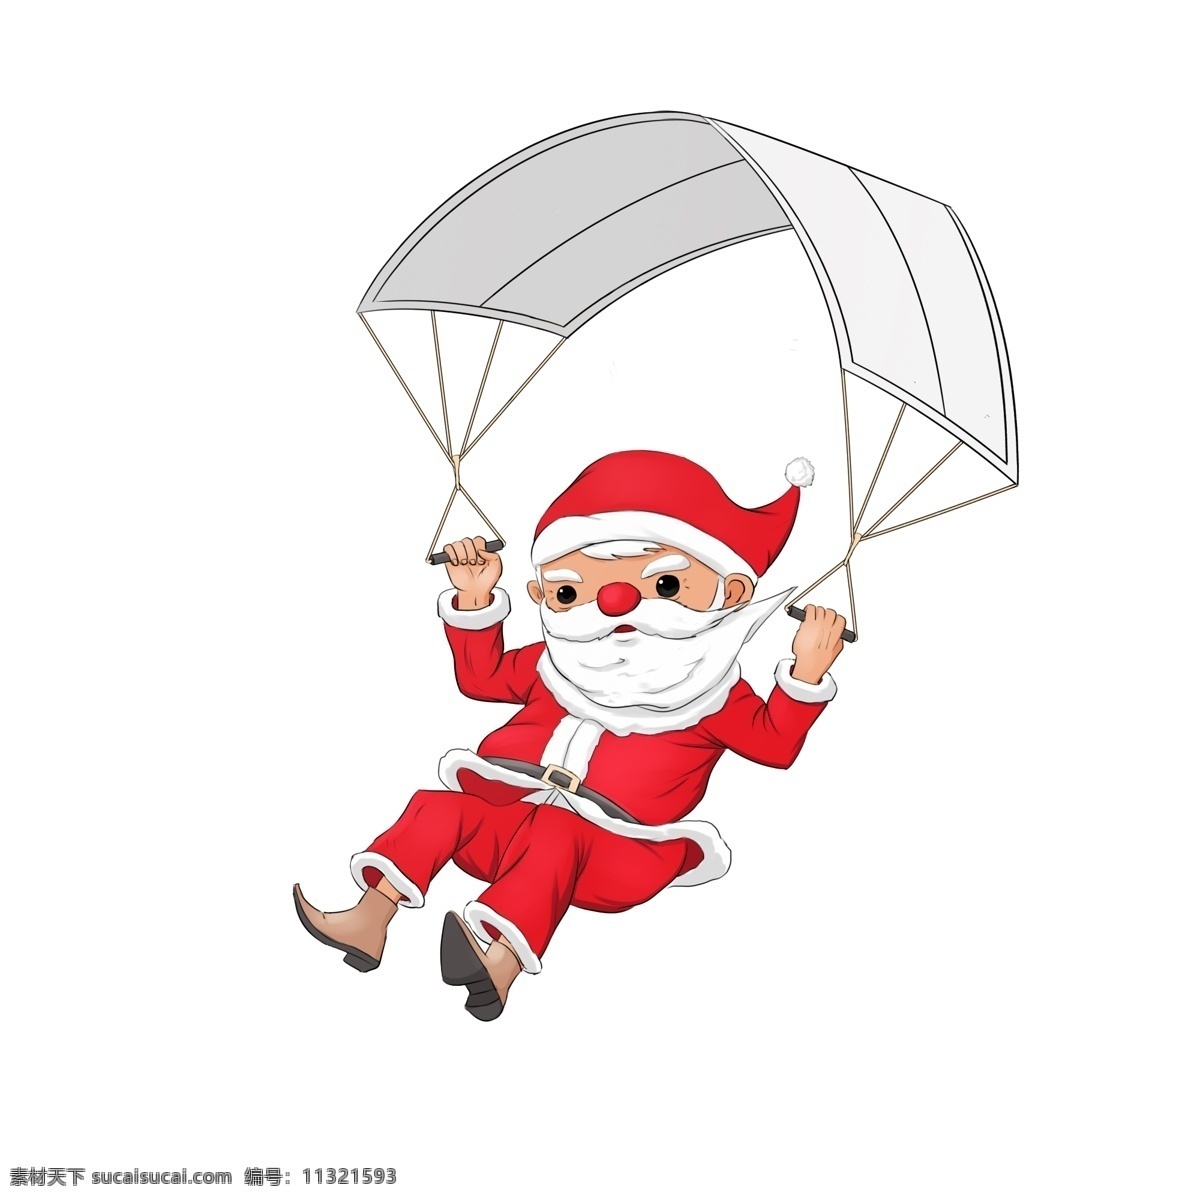 圣诞节 圣诞 夜 带 降落伞 圣诞老人 从天而降 圣诞夜 卡通圣诞老人 可爱圣诞老人 手绘圣诞老人 下坠 下滑